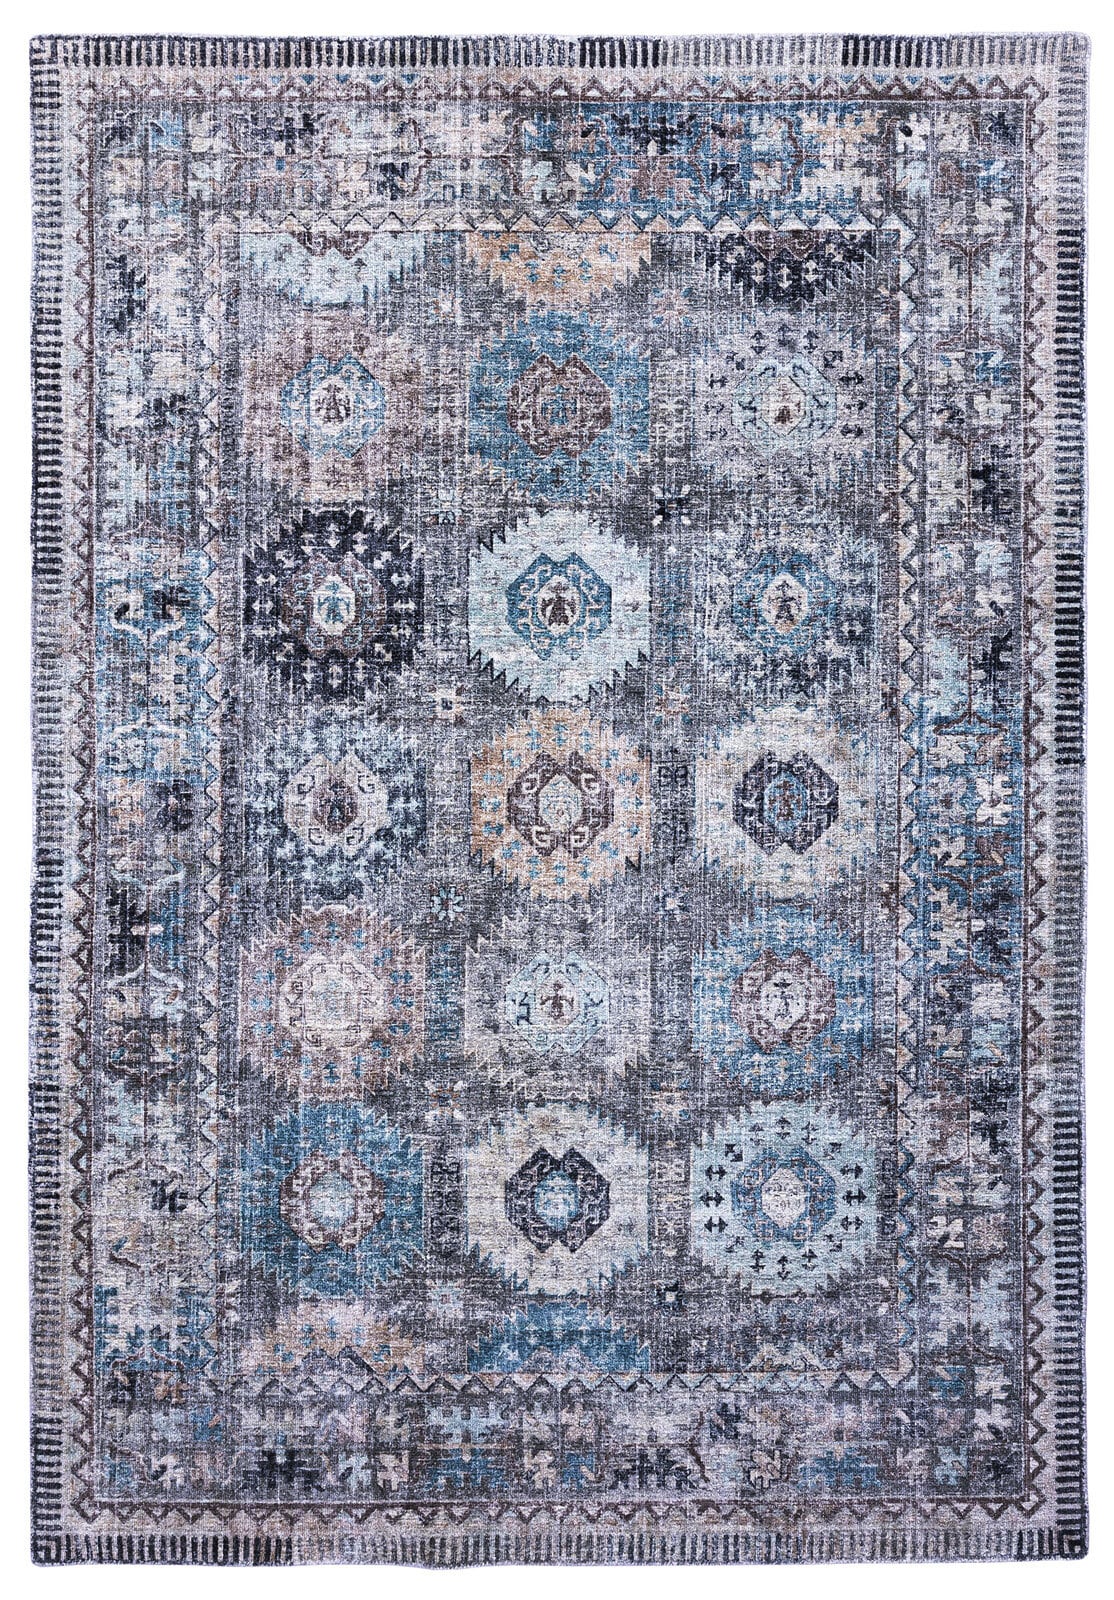 Vintage-Teppich COLORADO LOOM 90 x 160 cm grau/mehrfarbig